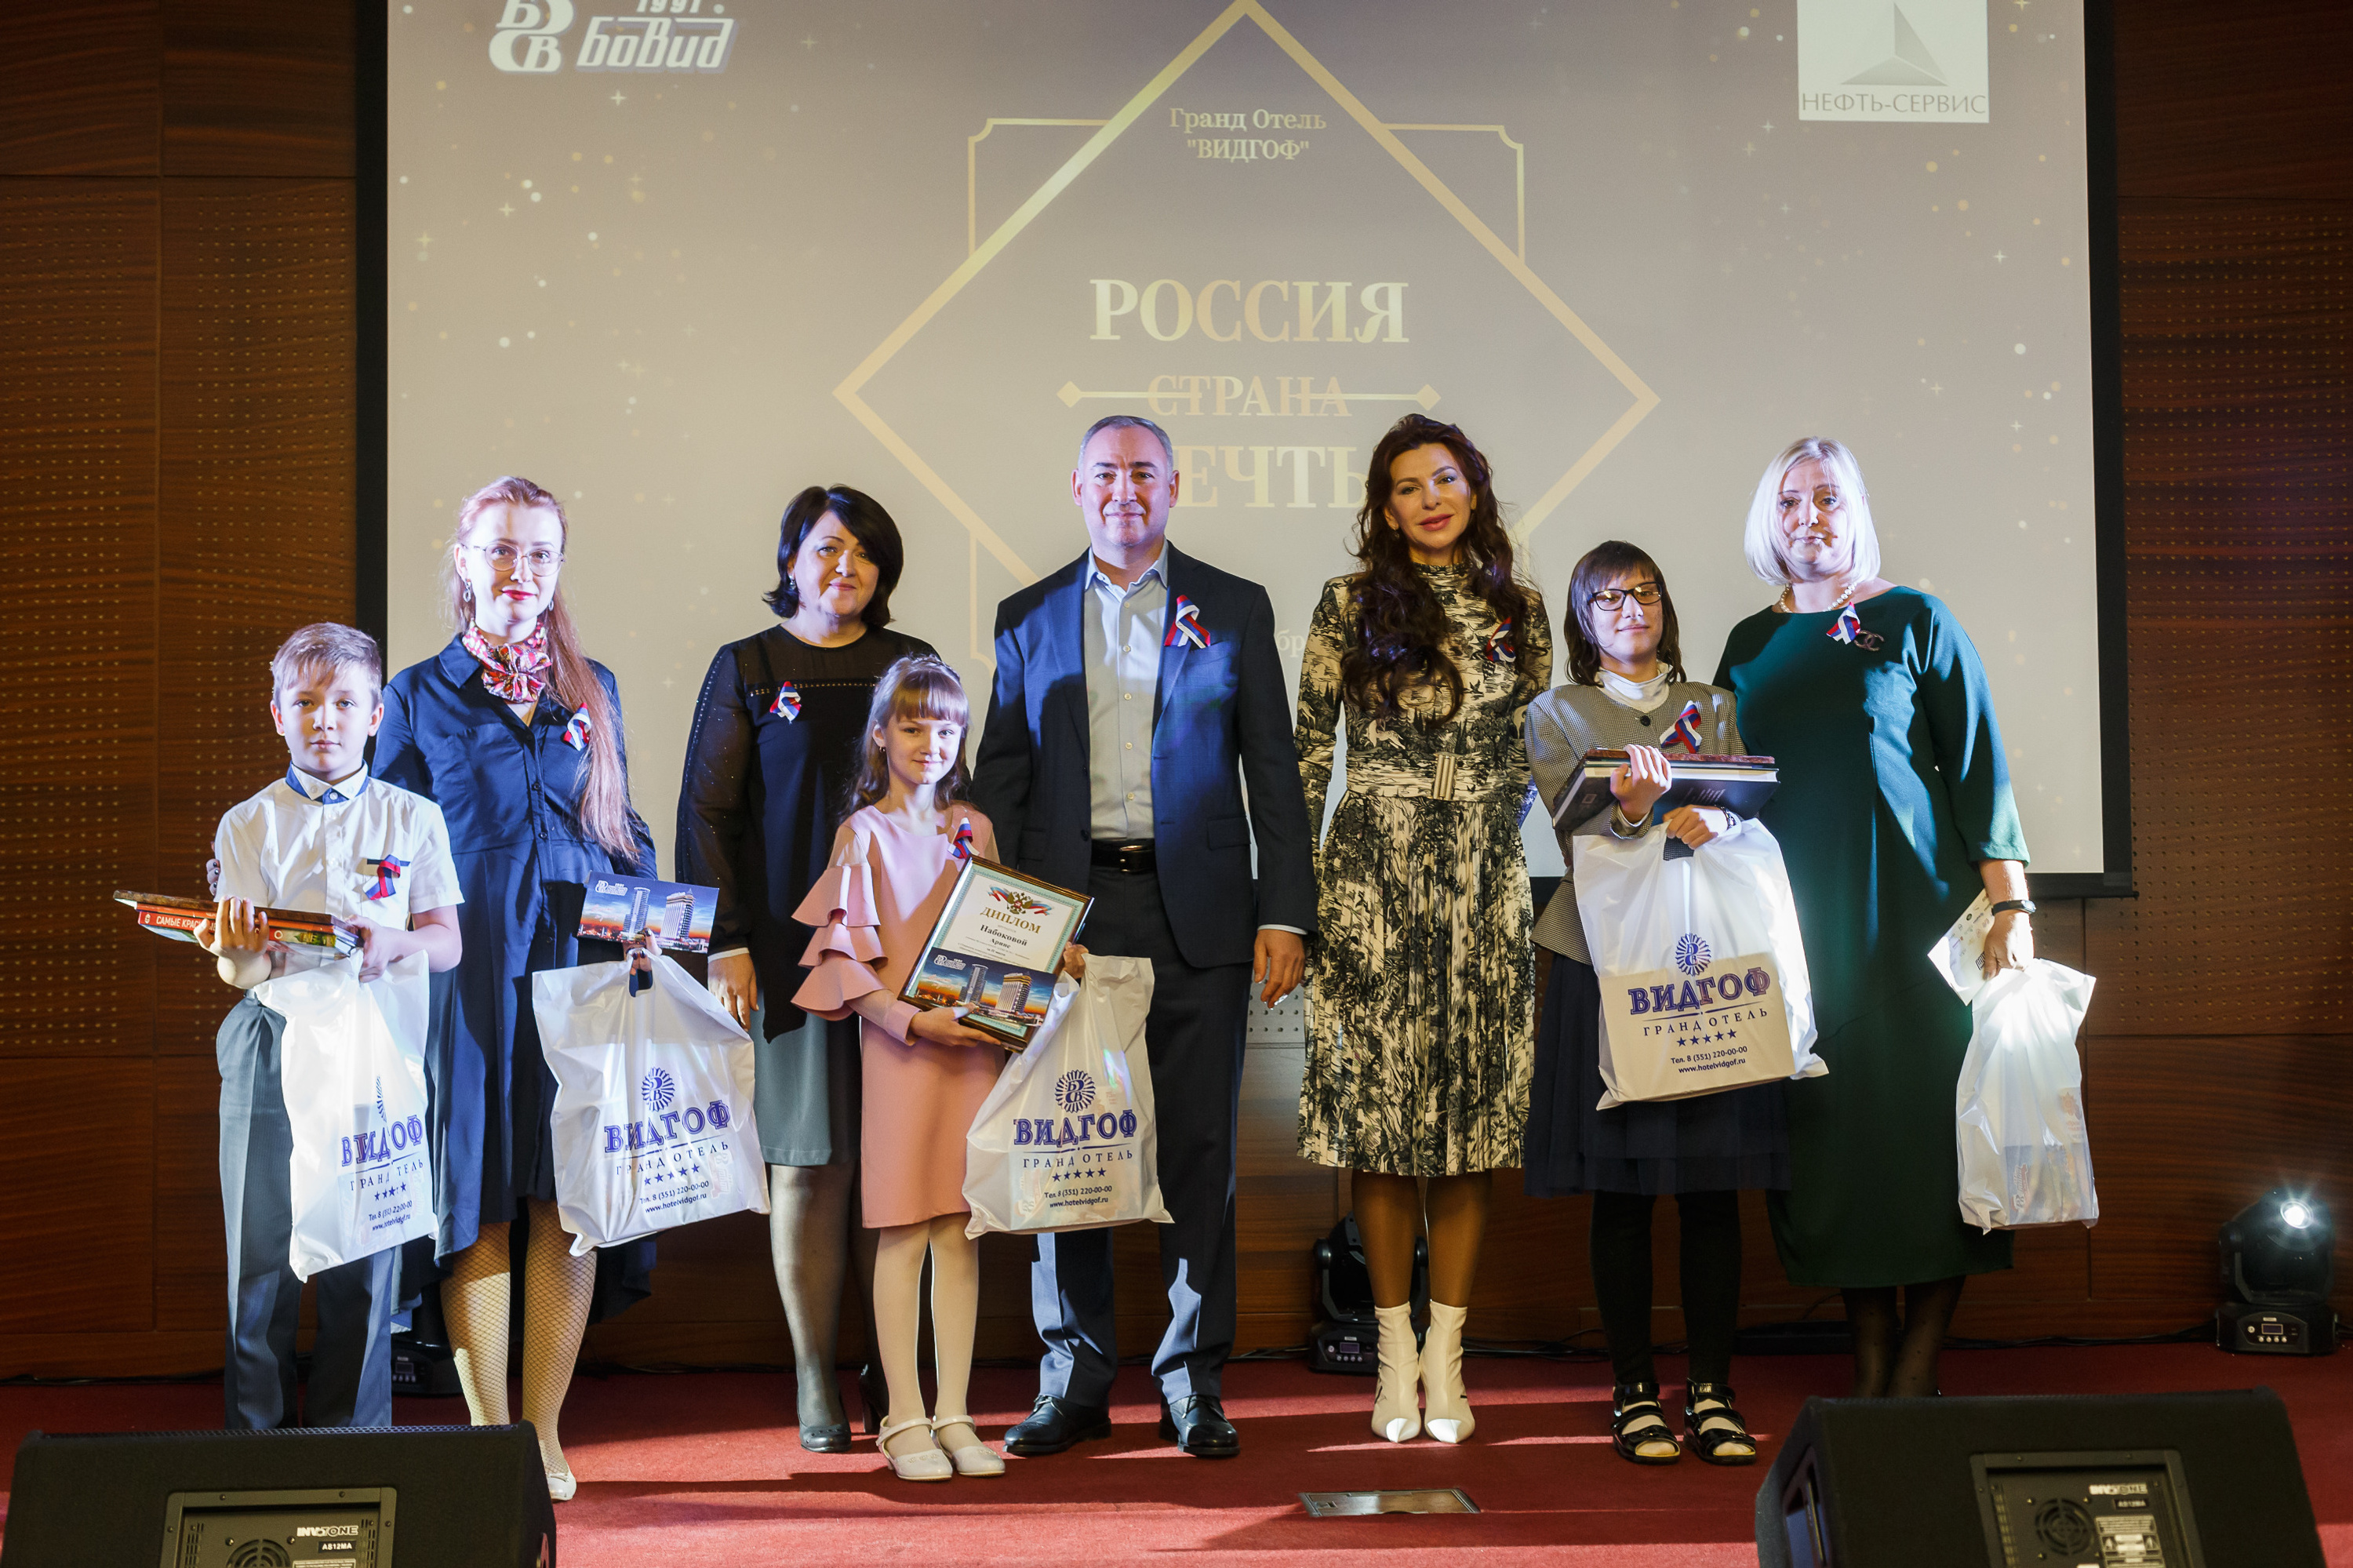 Победители конкурса, их руководители и директора школ были приглашены на церемонию награждения в Гранд отель «ВИДГОФ»